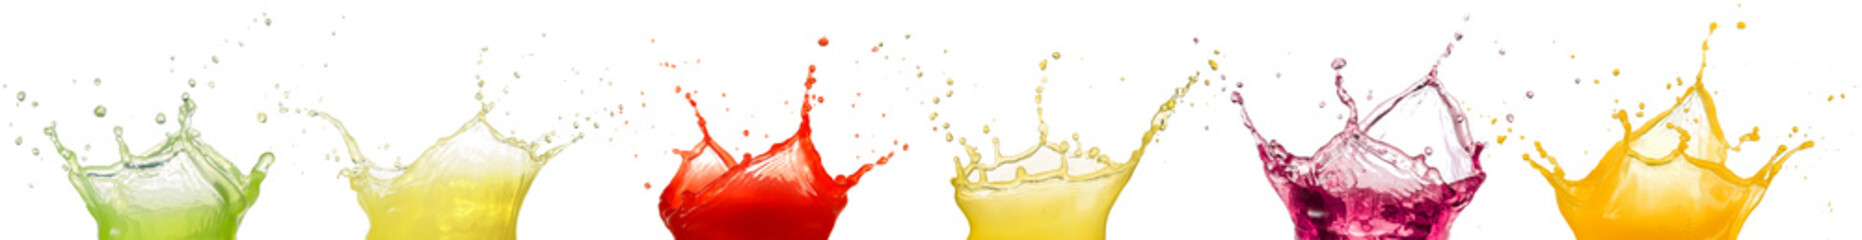 fruit juice splashes isolated on white background